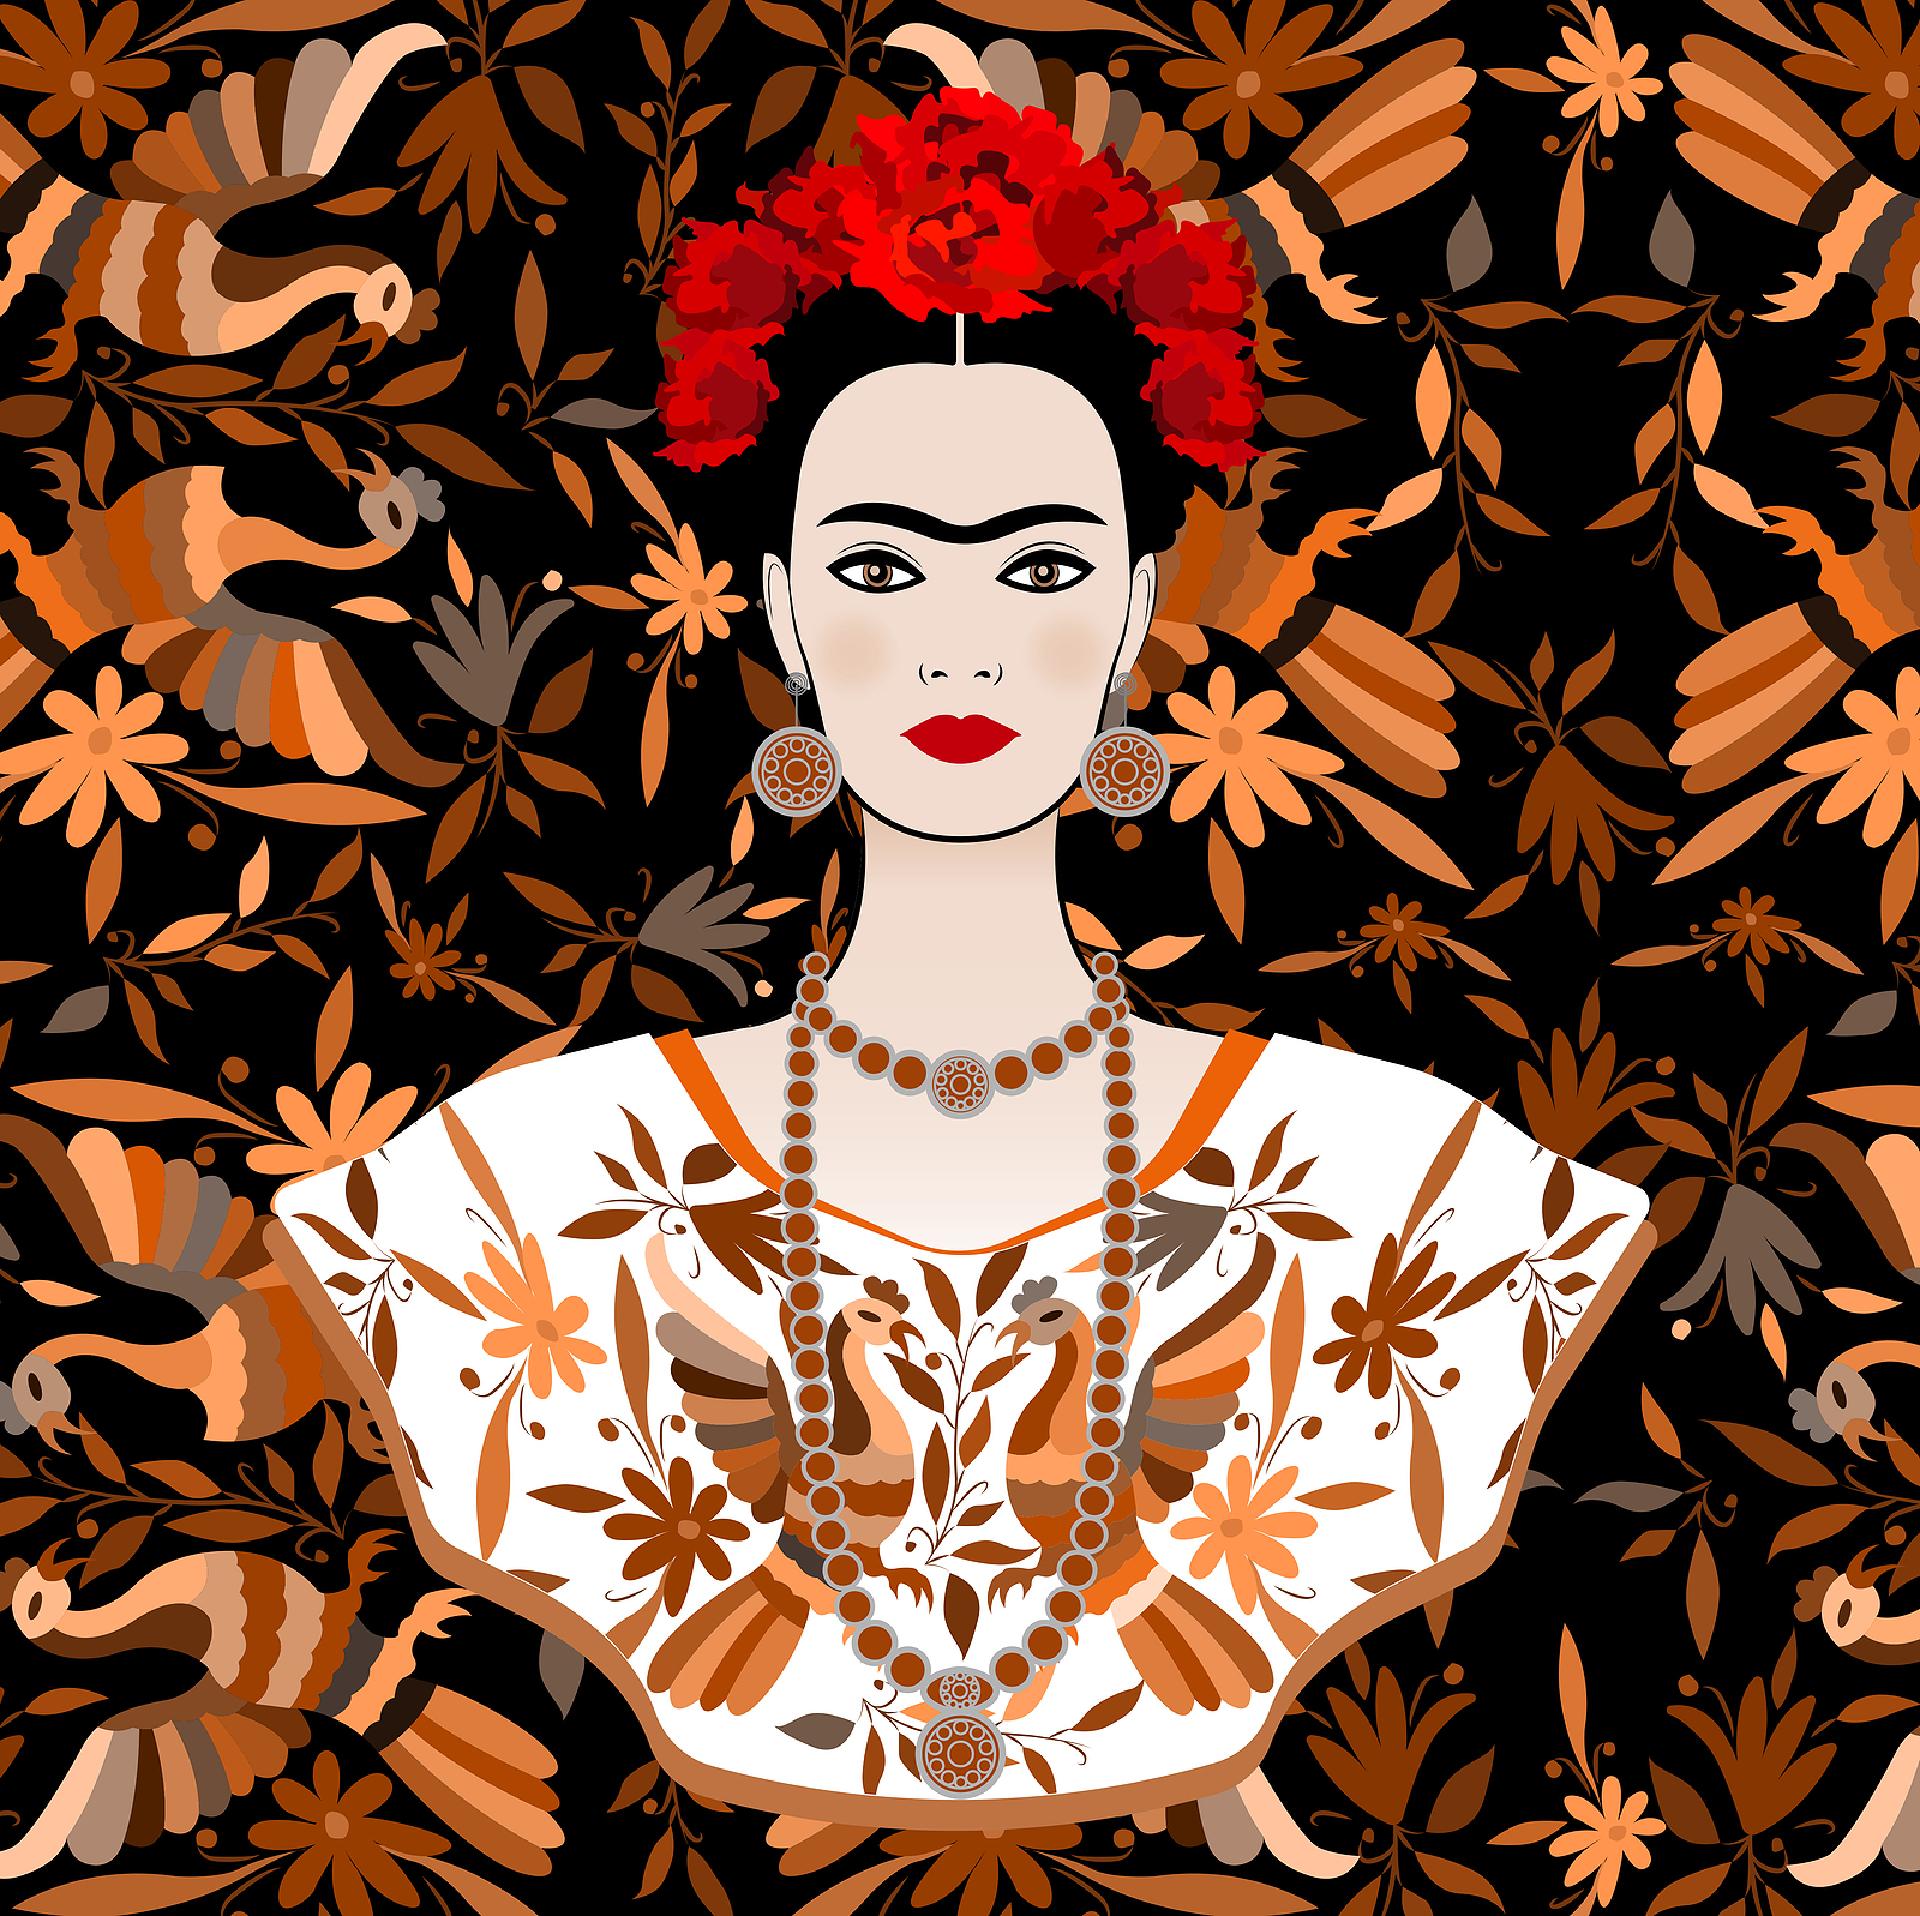 Frida Kahlo y el Muralismo Mexicano | Historia del arte urbano mexicano